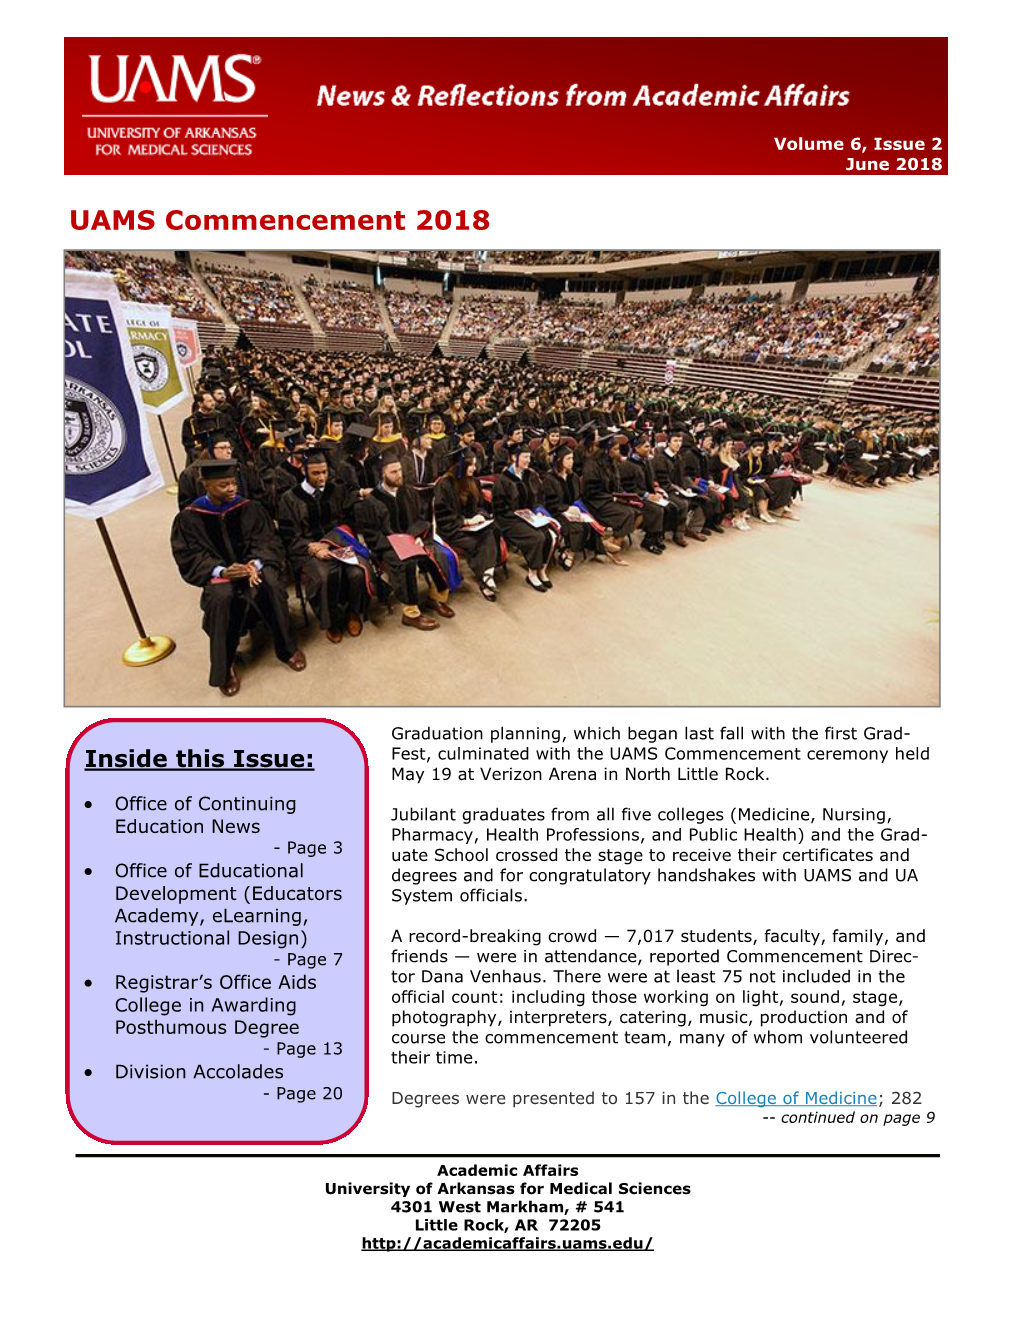 UAMS Commencement 2018